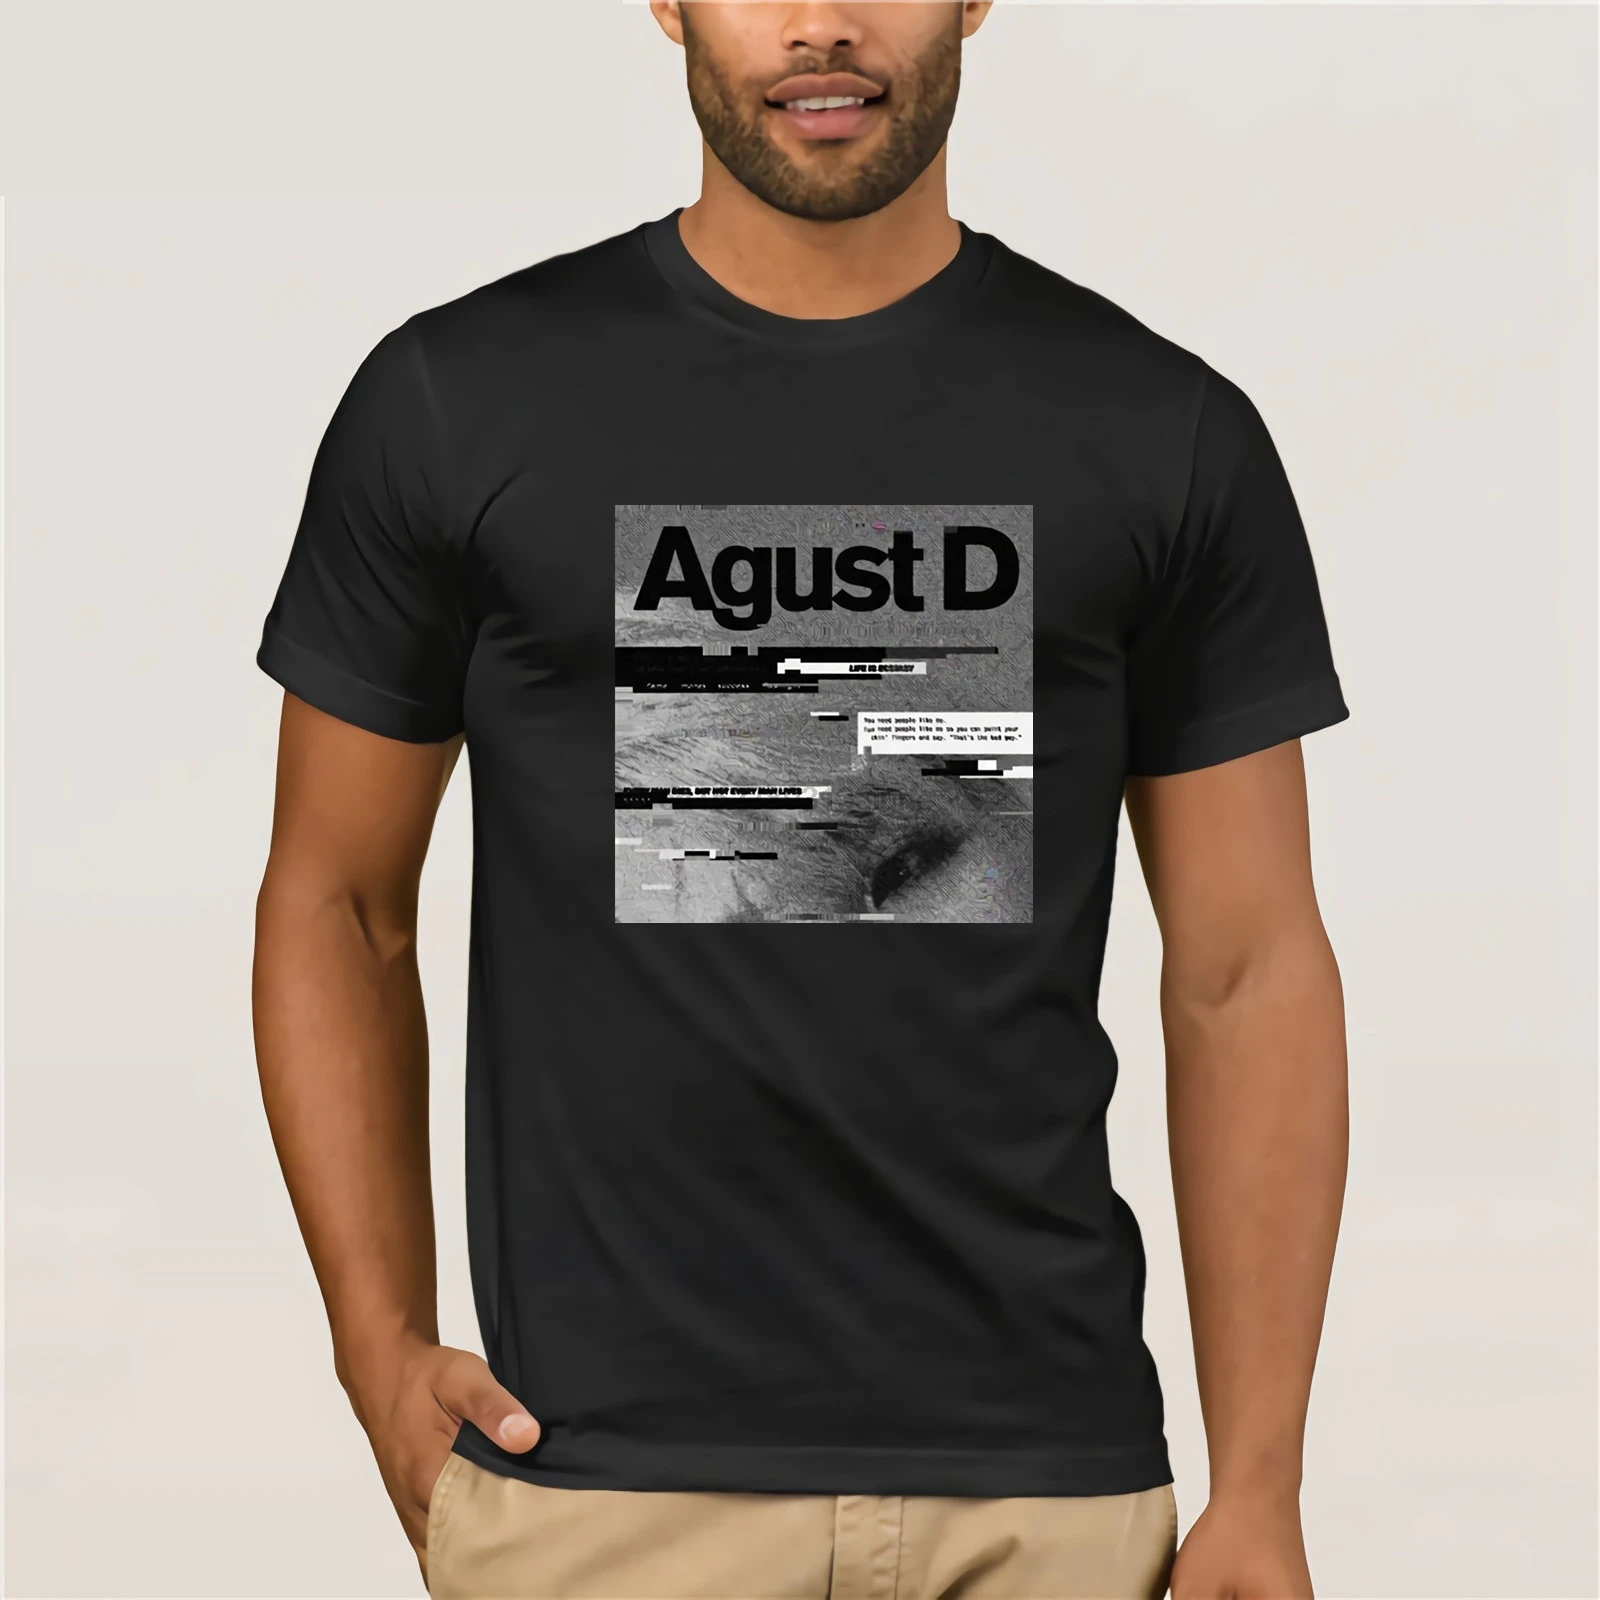 Agust D альбомная футболка с буквенным принтом хлопковая Футболка графическая